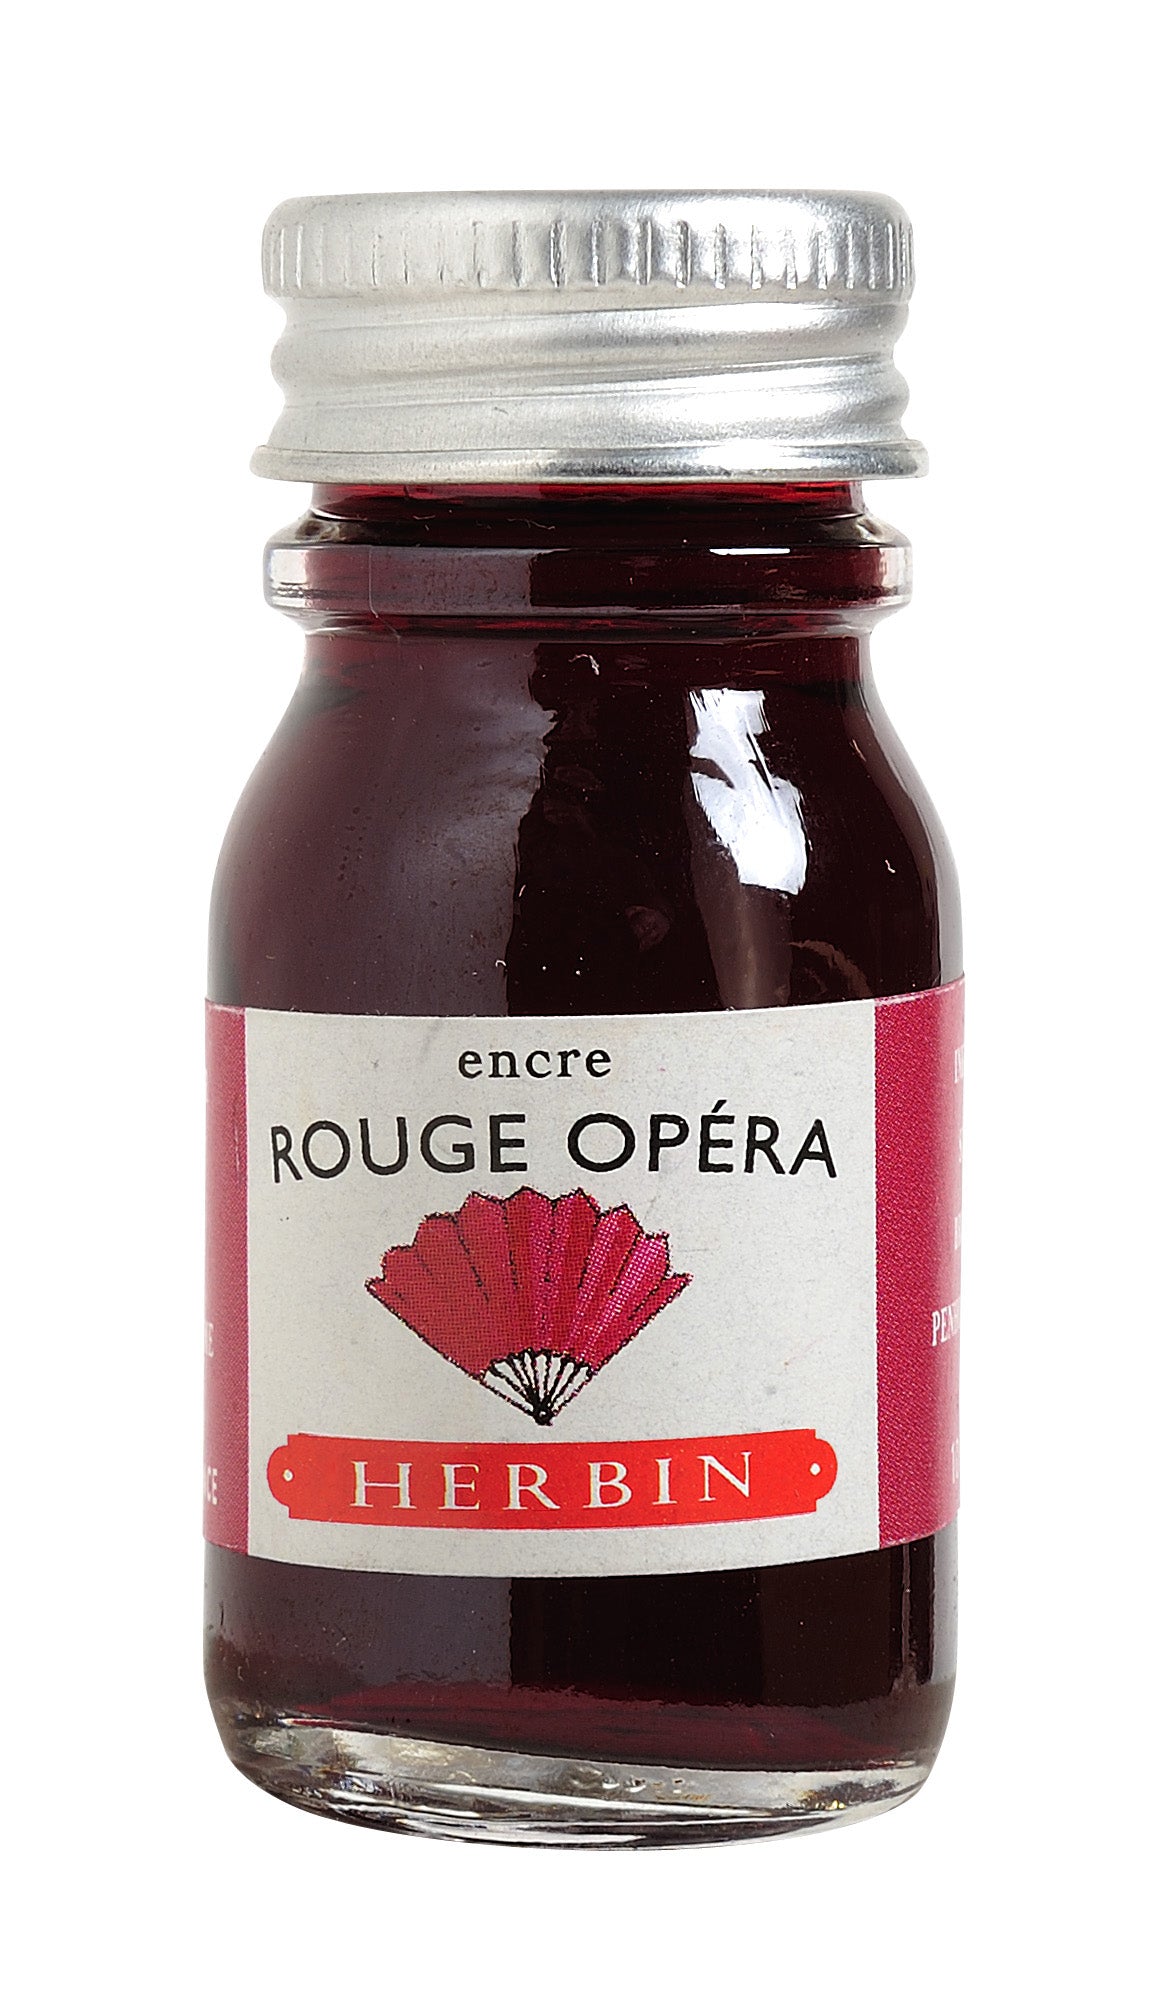 Herbin - Rouge opera (tiefrot), 10 ml